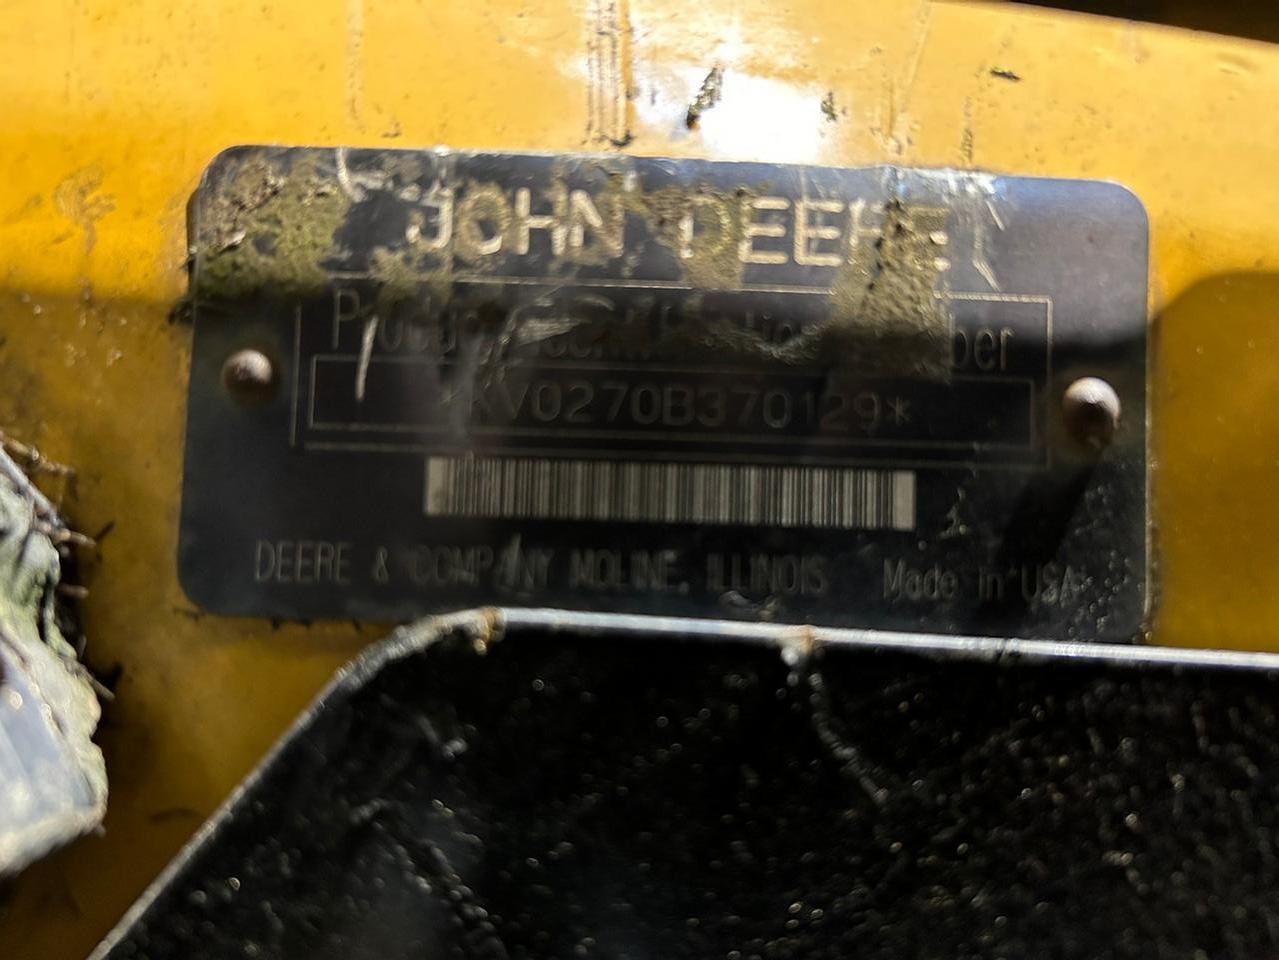 John Deere 270 Skid Steer Loader